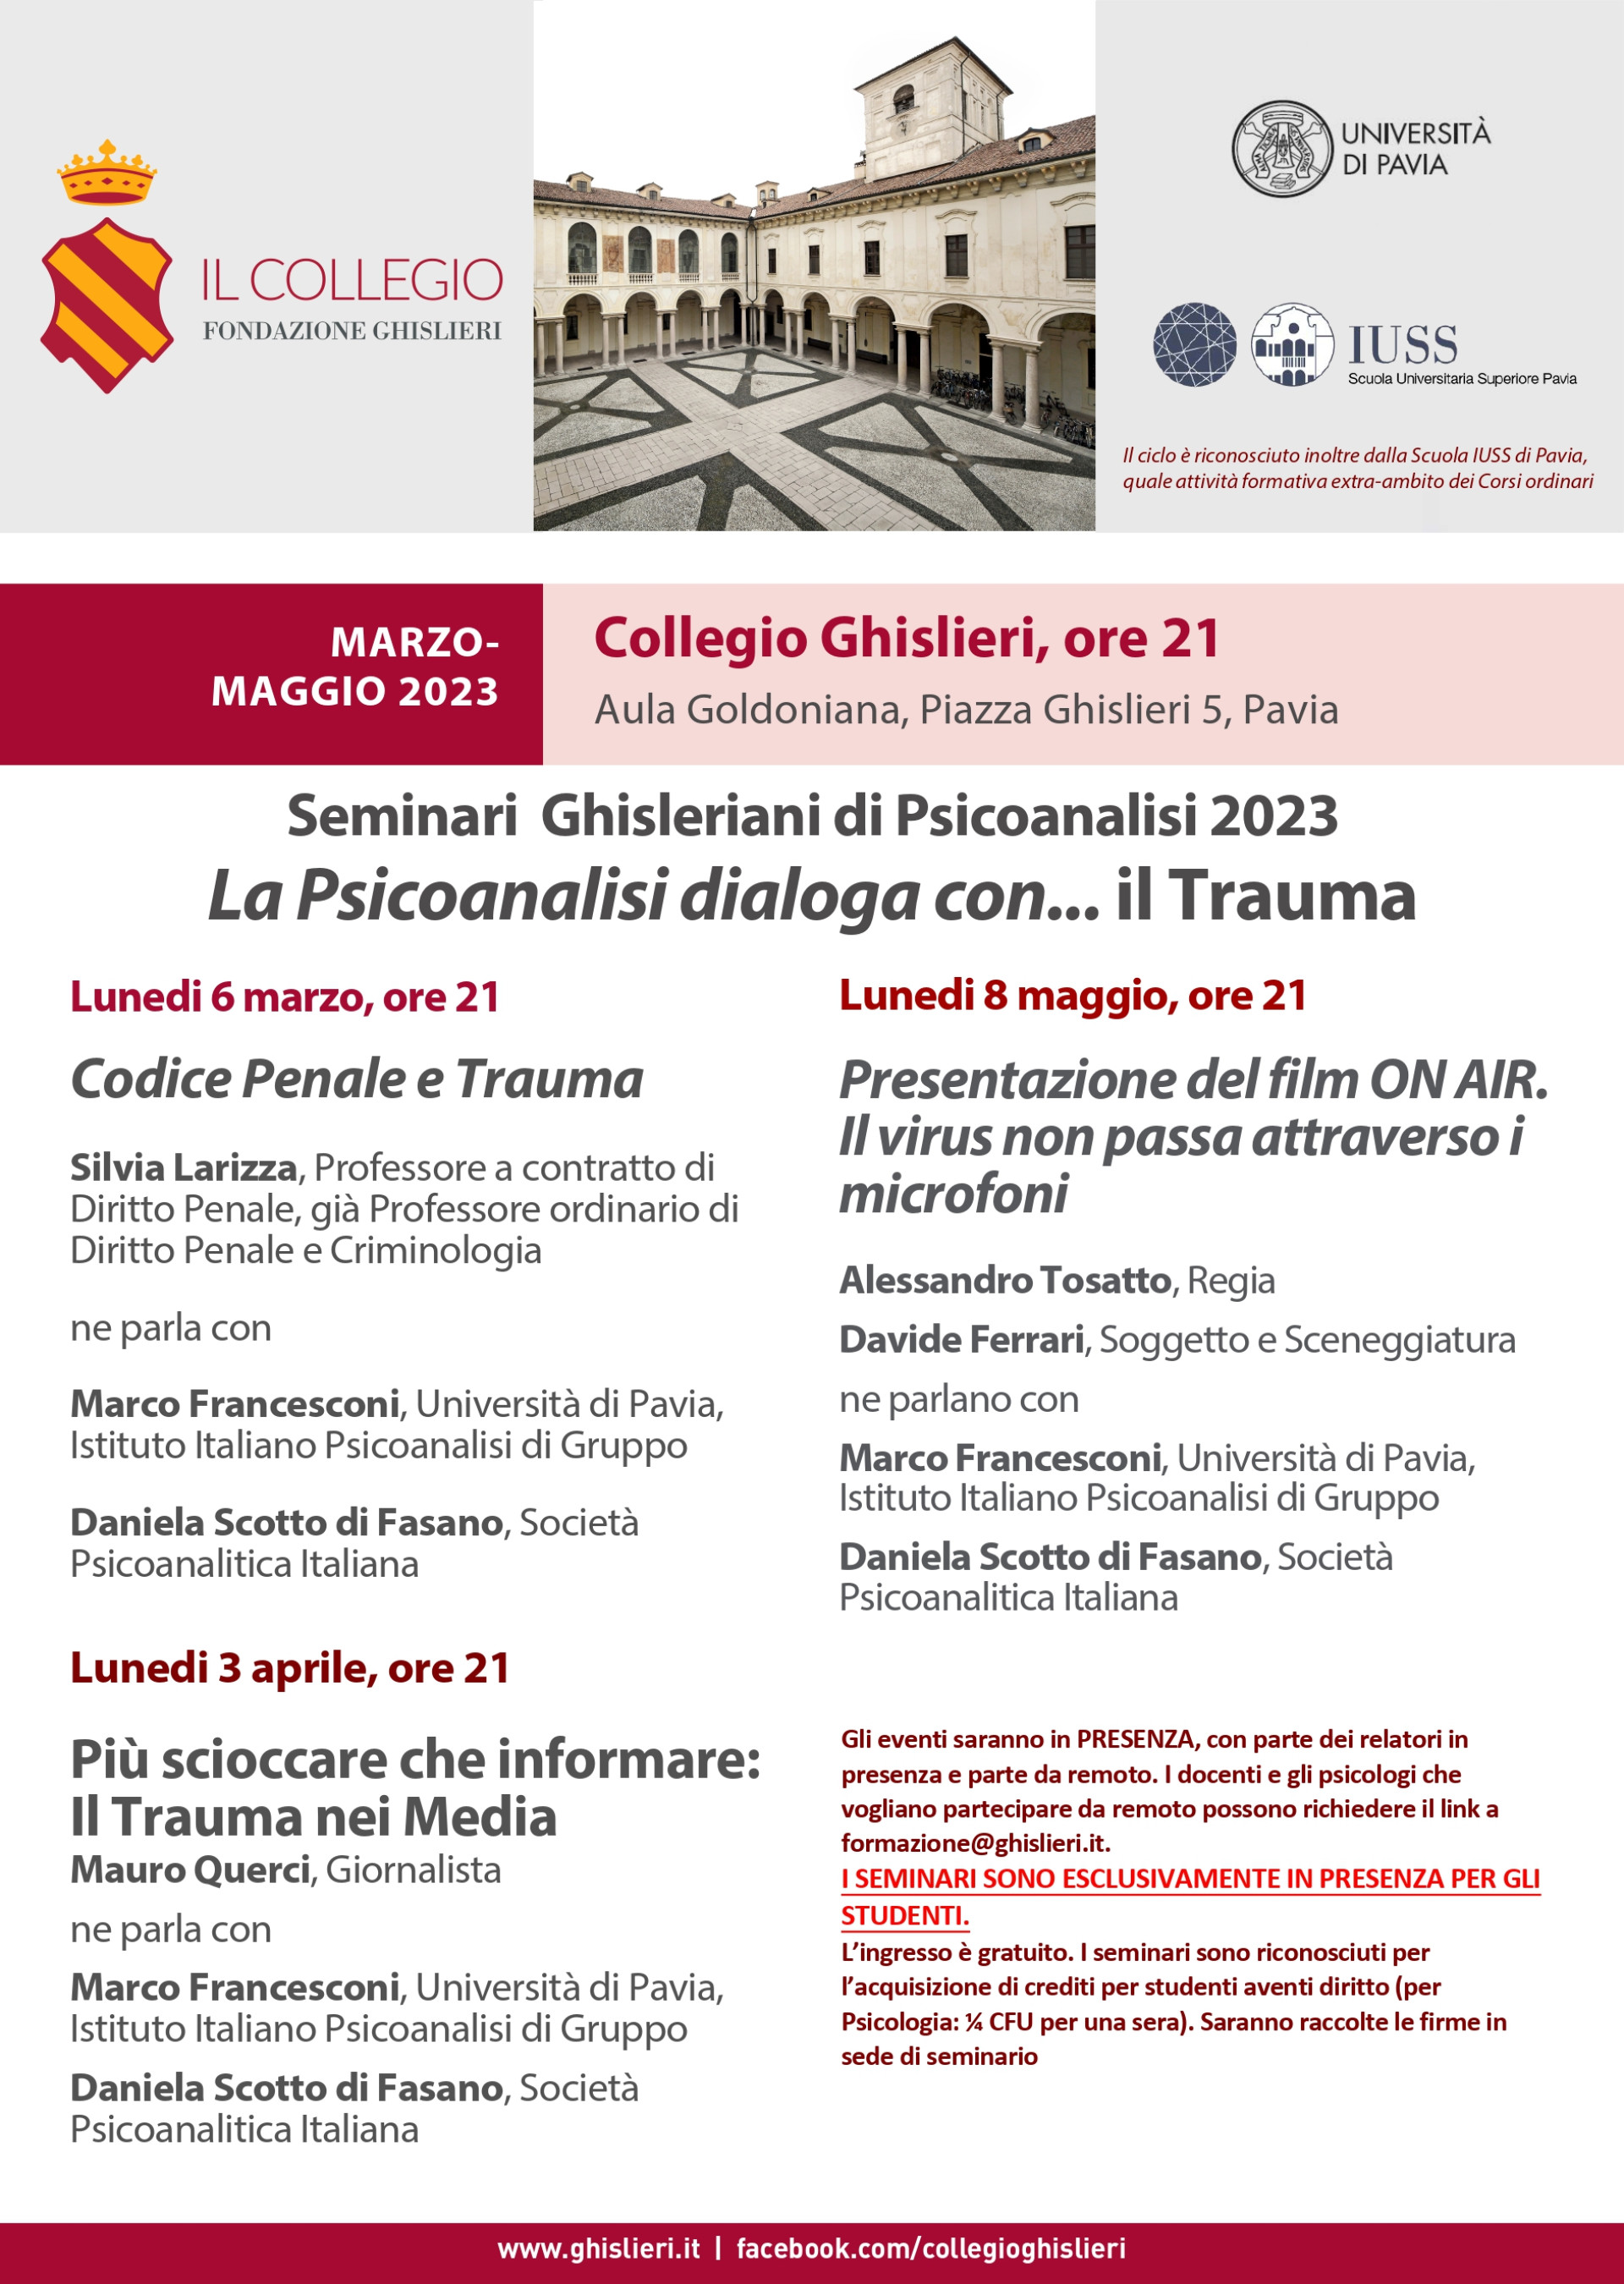 Seminari Ghisleriani di Psicoanalisi 2023 - lunedi 6 marzo h:21